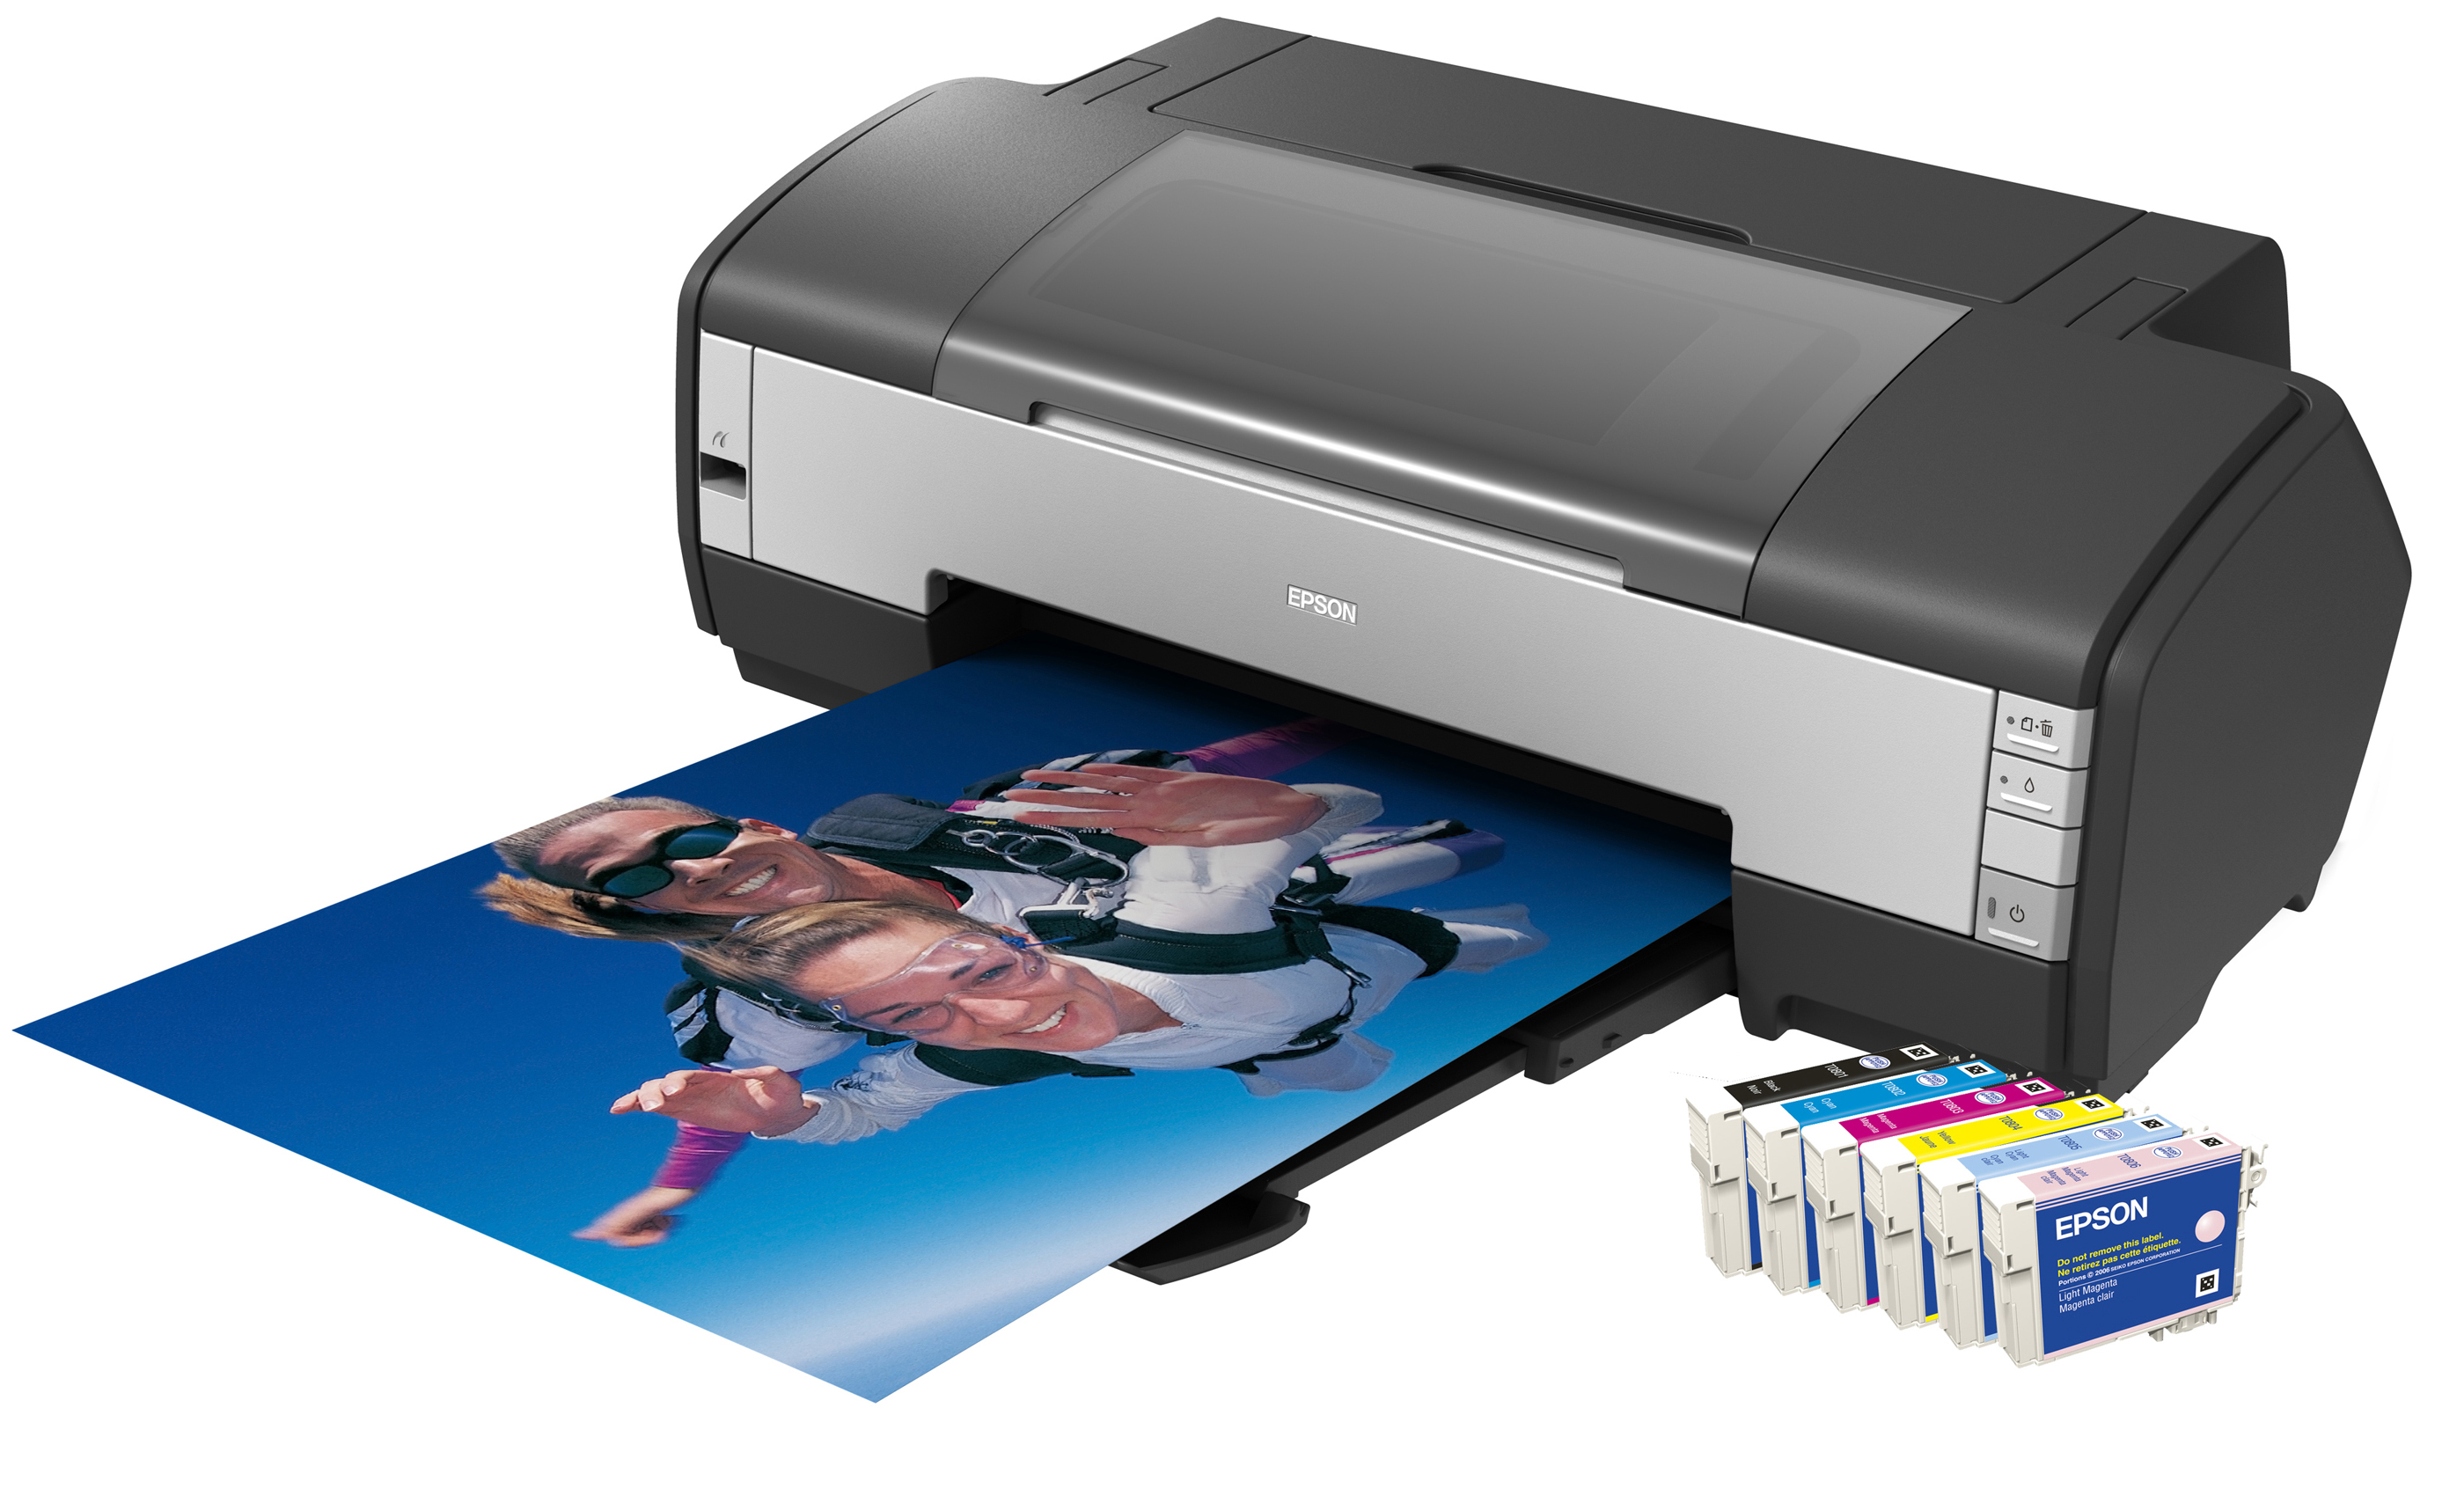 Печать на принтере бланки. Принтер Epson 1410. Принтер Epson Stylus photo 1410. Принтер цветной Epson 1410. Струйный принтер Epson 1410.